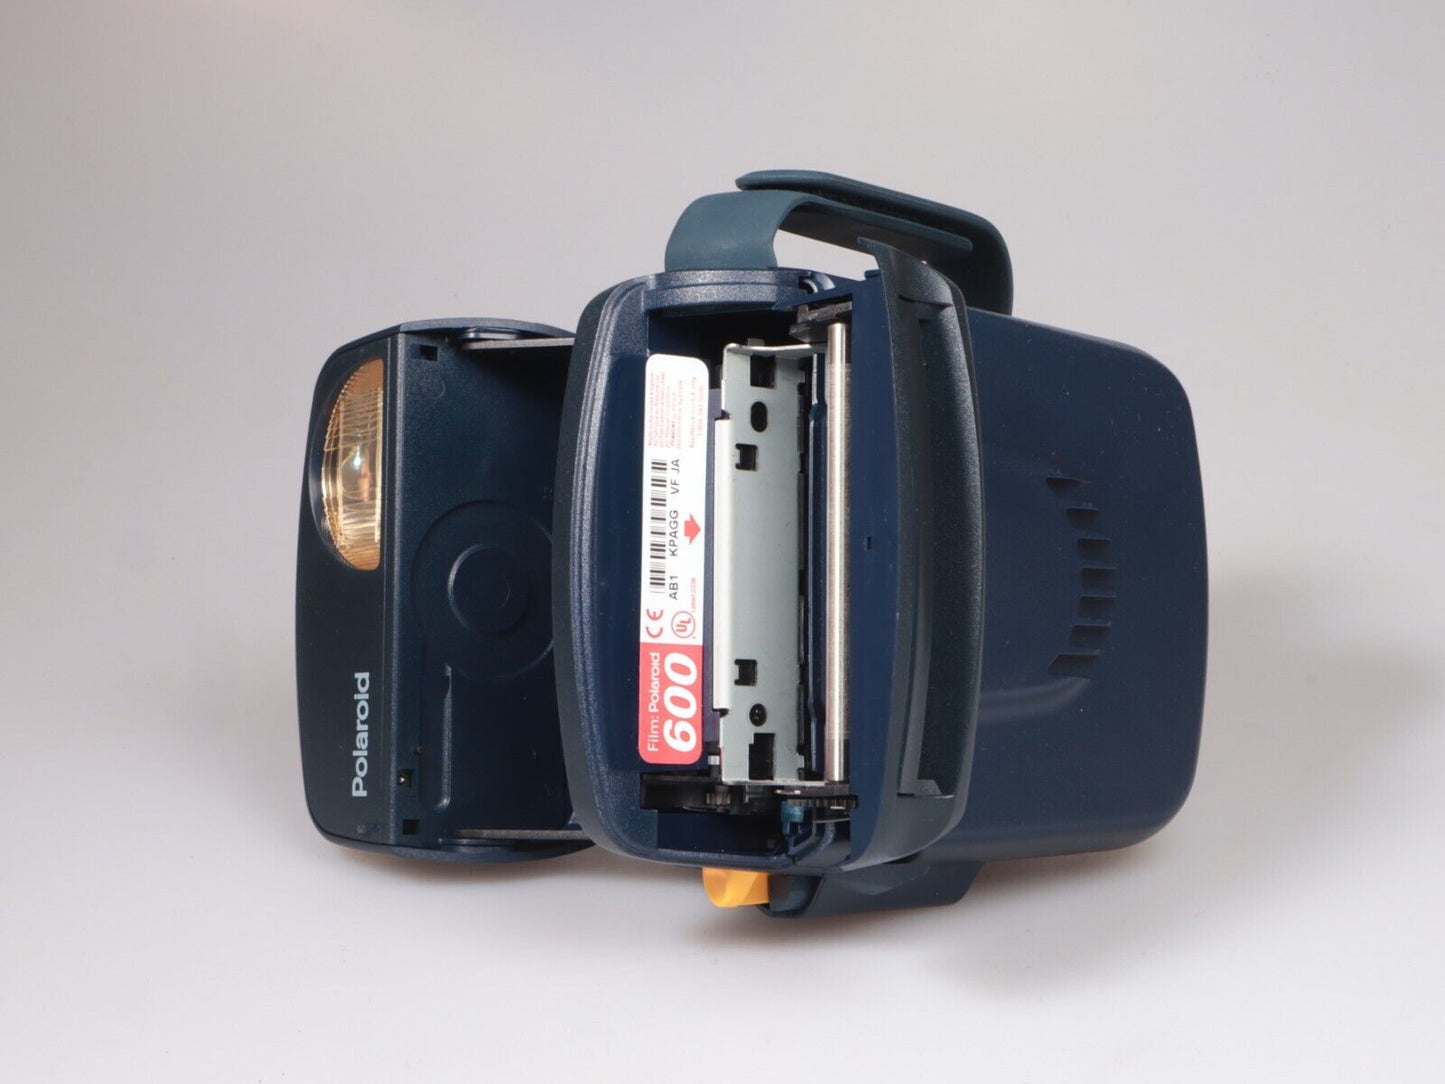 Polaroid 600 | Instant Film Camera | 600 Film | Blue